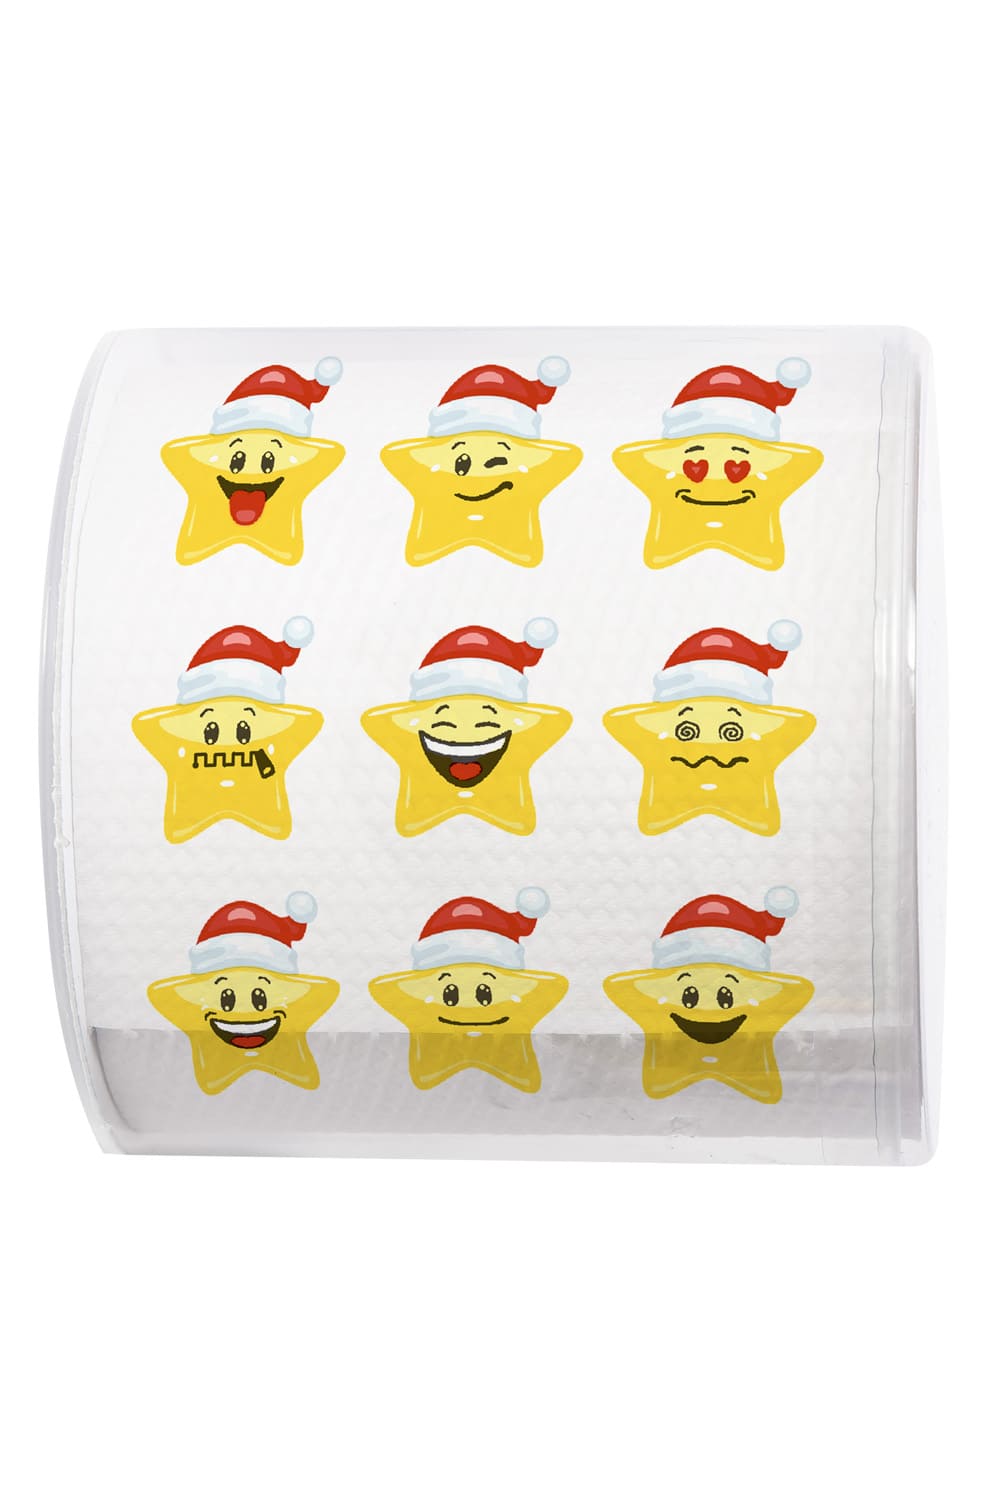 Dieses Stern Smile WC-Papier sorgt bestimmt fuer die beste Unterhaltung auf dem Klo. Ein absoluter Spassfaktor fuer das Bad. Einfach ein lustiges Geschenk waehrend der Adventszeit, zu Weihnachten oder auch fuer eine kreative und lustige Dekoration an einem Weihnachtsfest. Das Klopapier ist verpackt in einer Klarsicht-Box. 